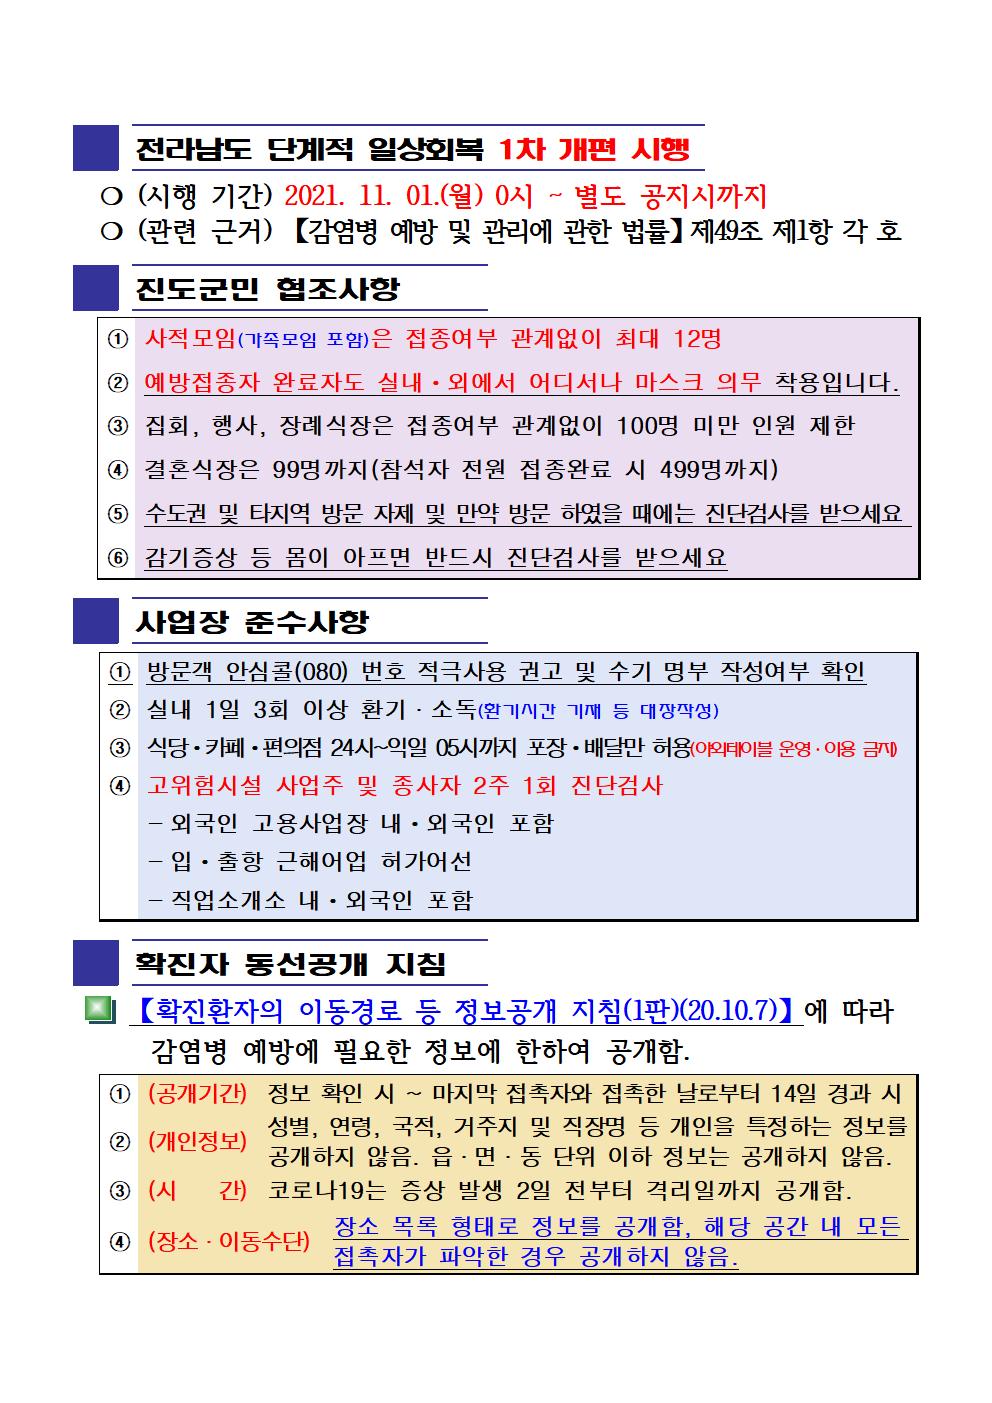 2021년 코로나19 대응 일일상황보고(11월 2일 24시 기준) 첨부#2